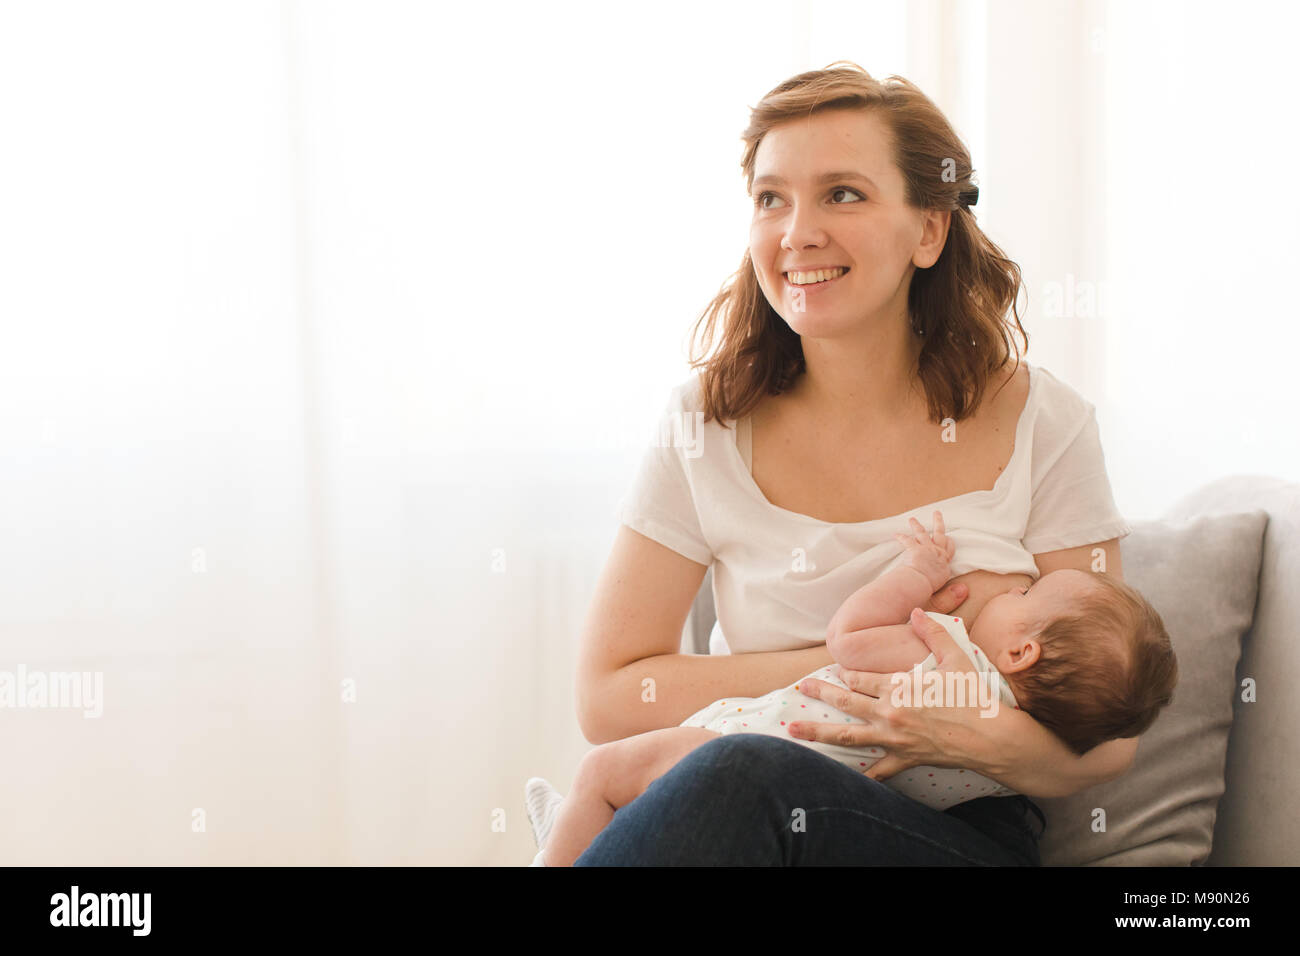 Donna che allatta immagini e fotografie stock ad alta risoluzione - Alamy